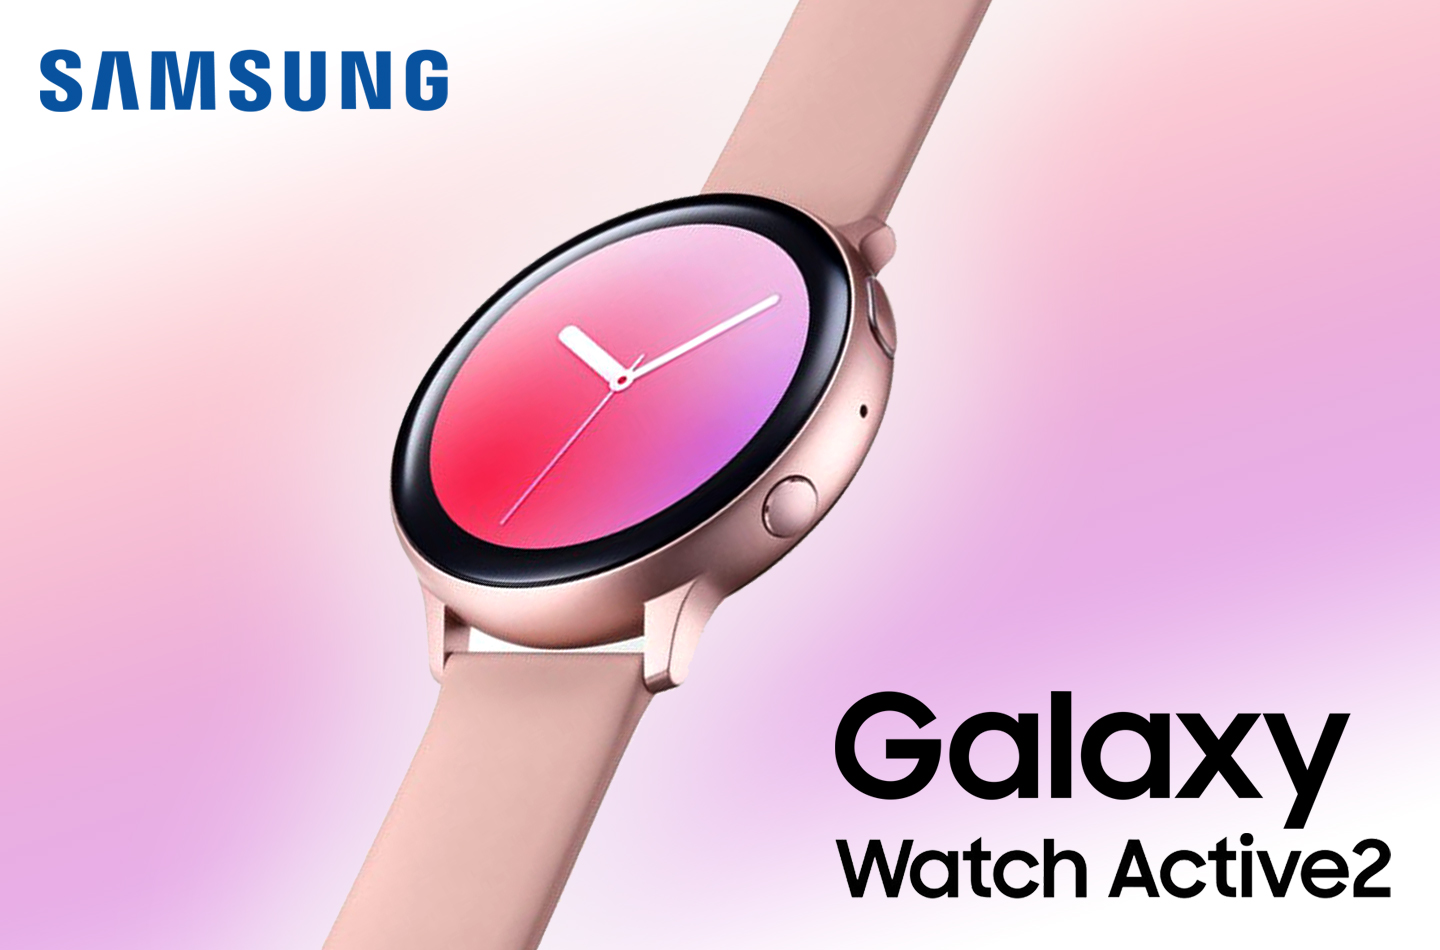 herinneringen Algebraïsch rundvlees Samsung Galaxy Watch Active 2 smartwatch | LetsGoDigital